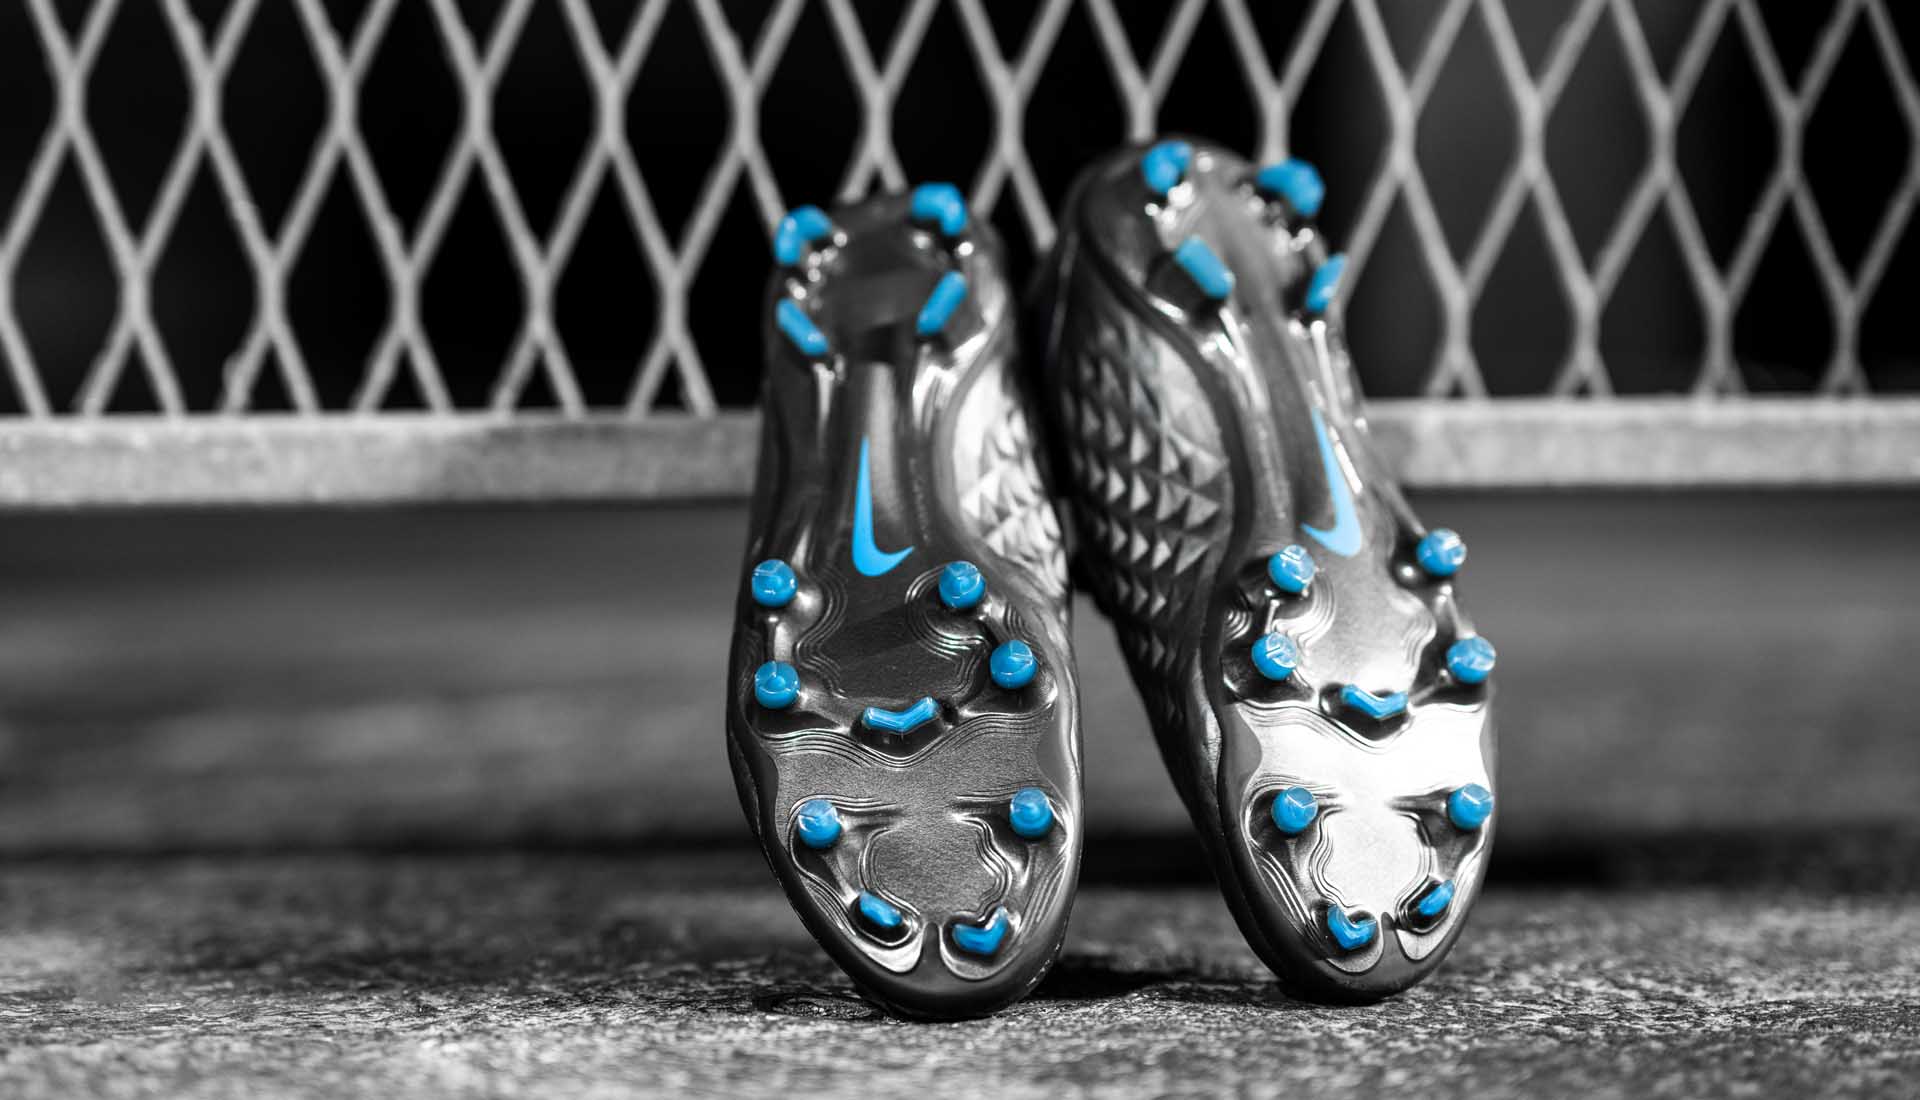 Đế giày bóng đá Nike Tiempo 8 được Nike thiết kế nhằm hỗ trợ sự chắc chân và đổi hướng dễ dàng hơn